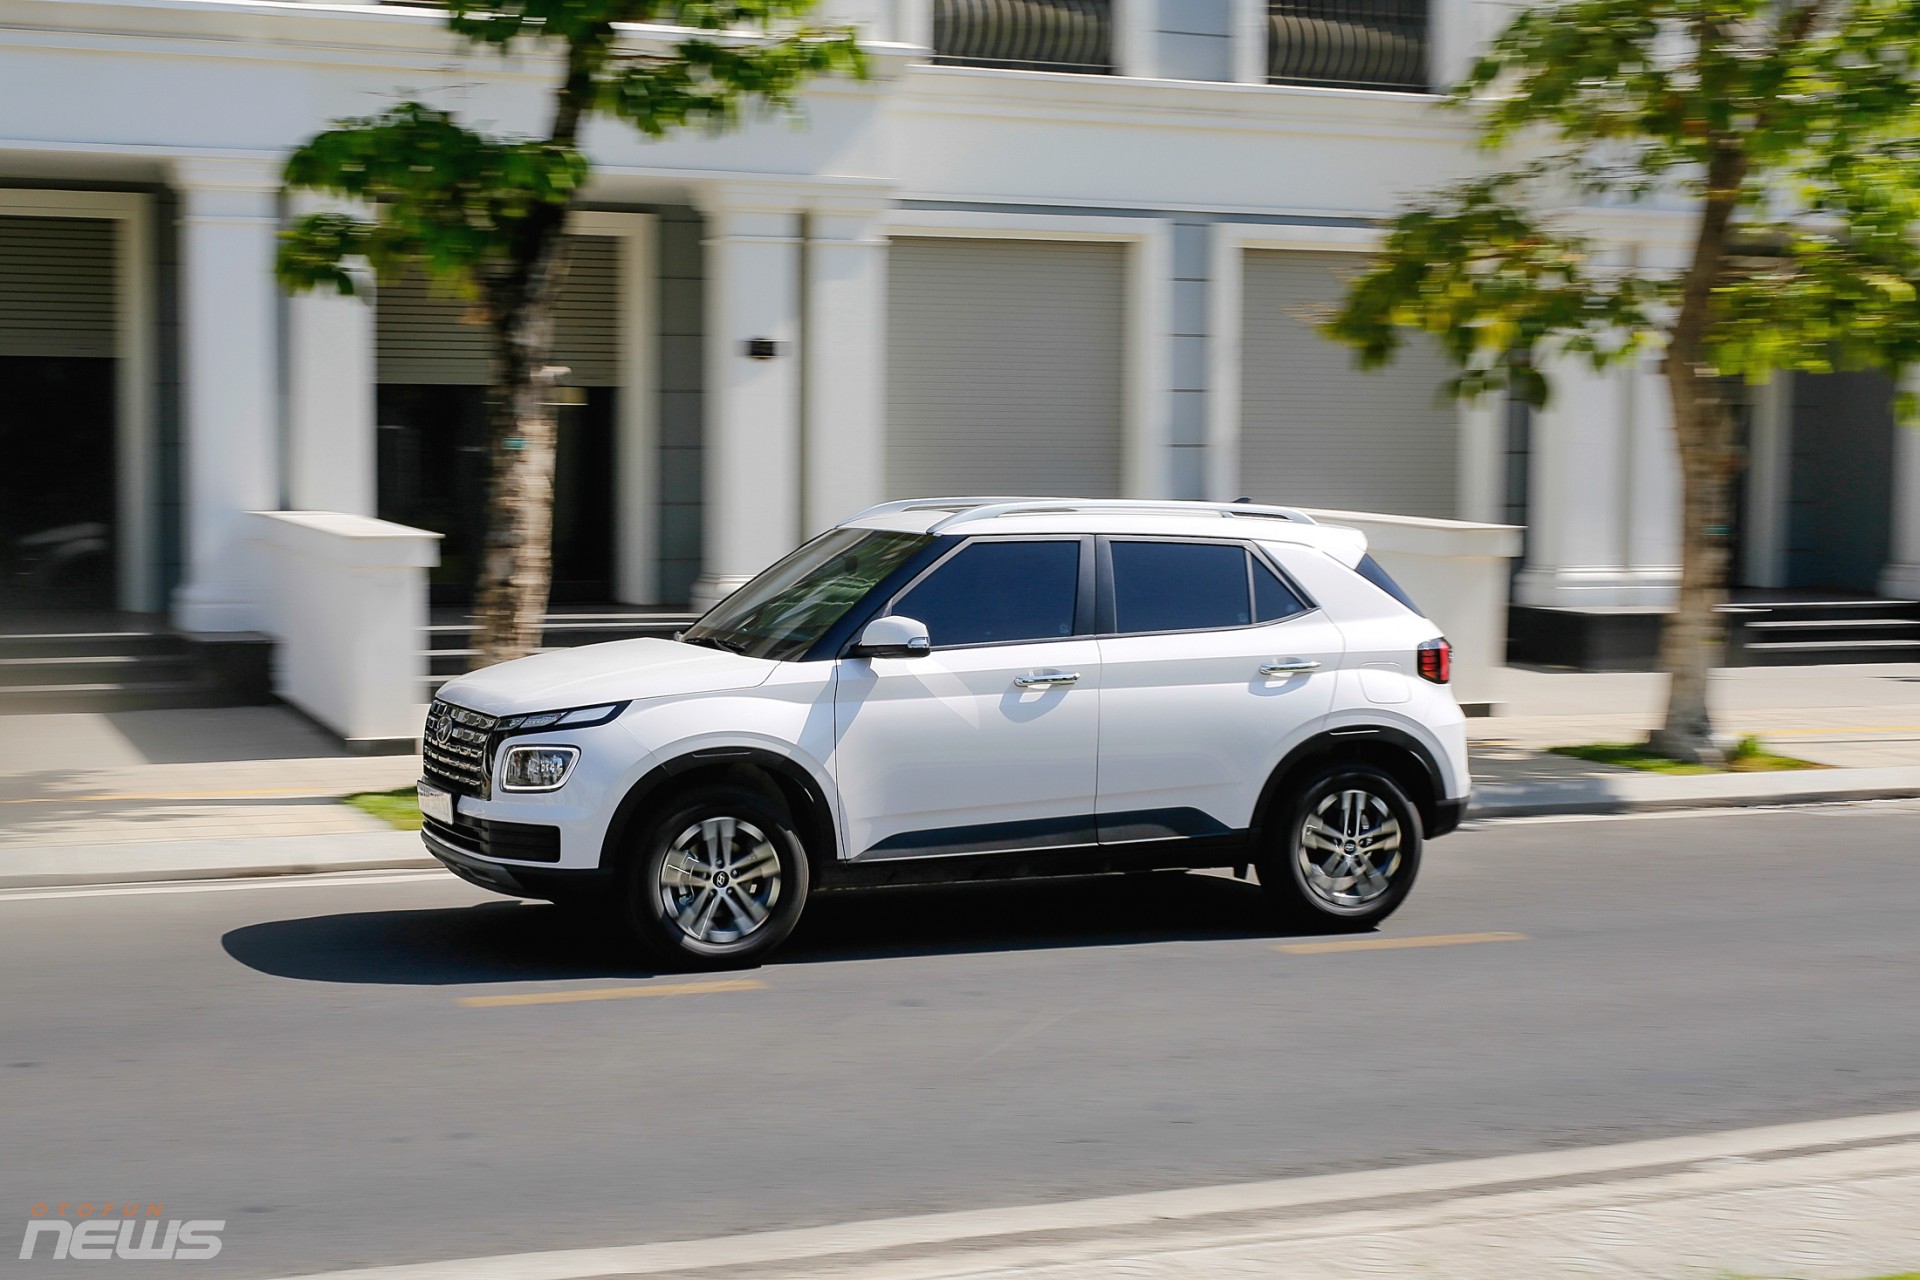 Đánh giá Hyundai Venue: Chiếc SUV nhỏ gọn nhưng đầy thực dụng